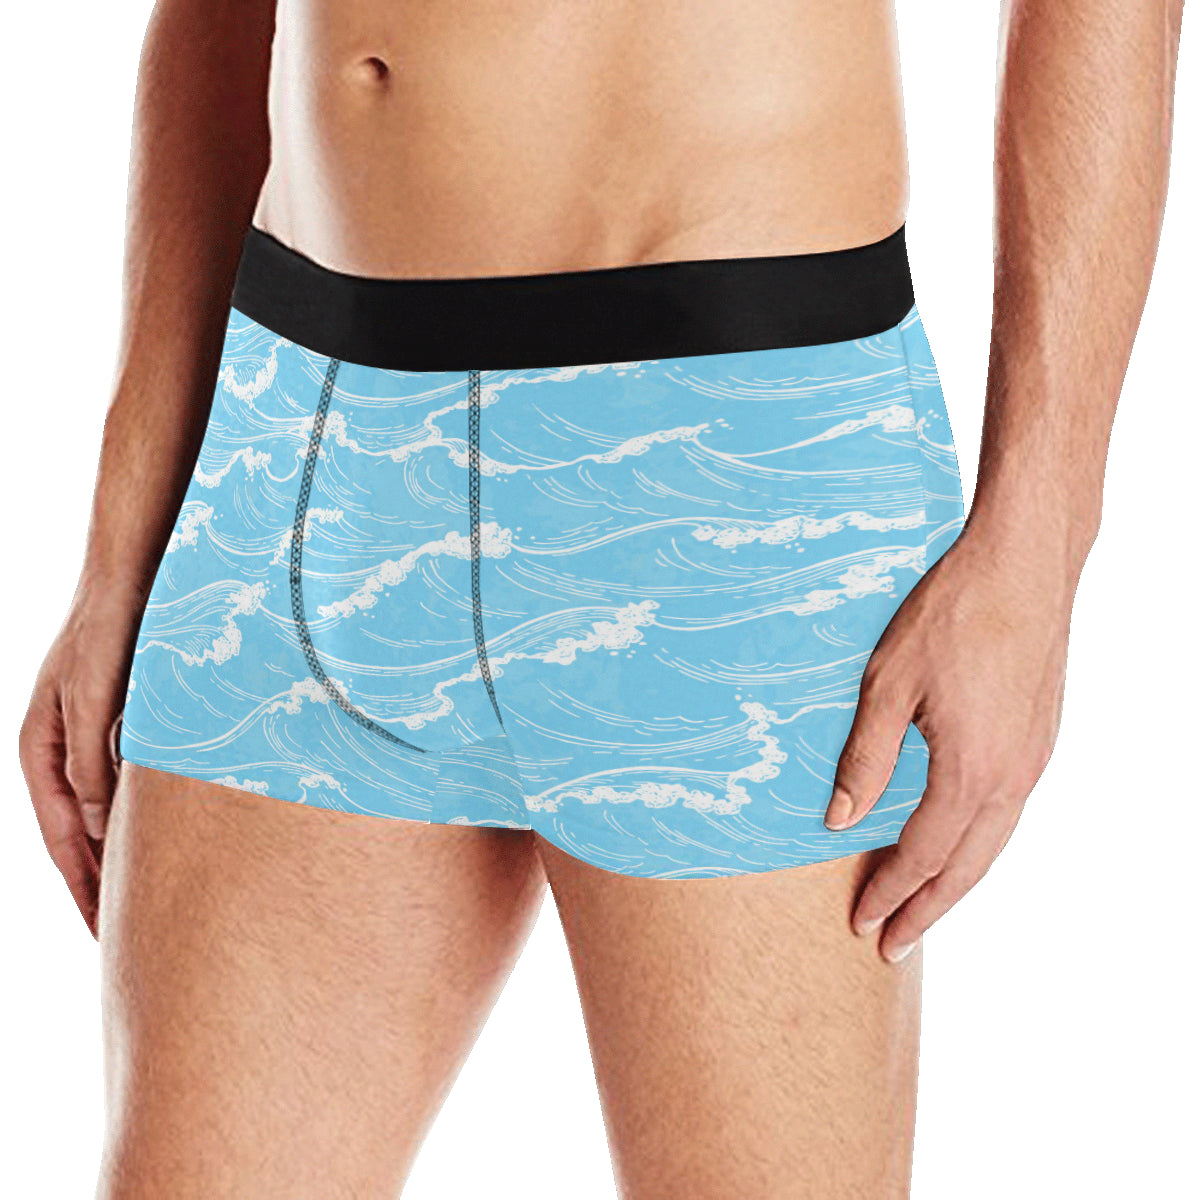 Ocean Wave Pattern Print Design A01 Men's Boxer Briefs